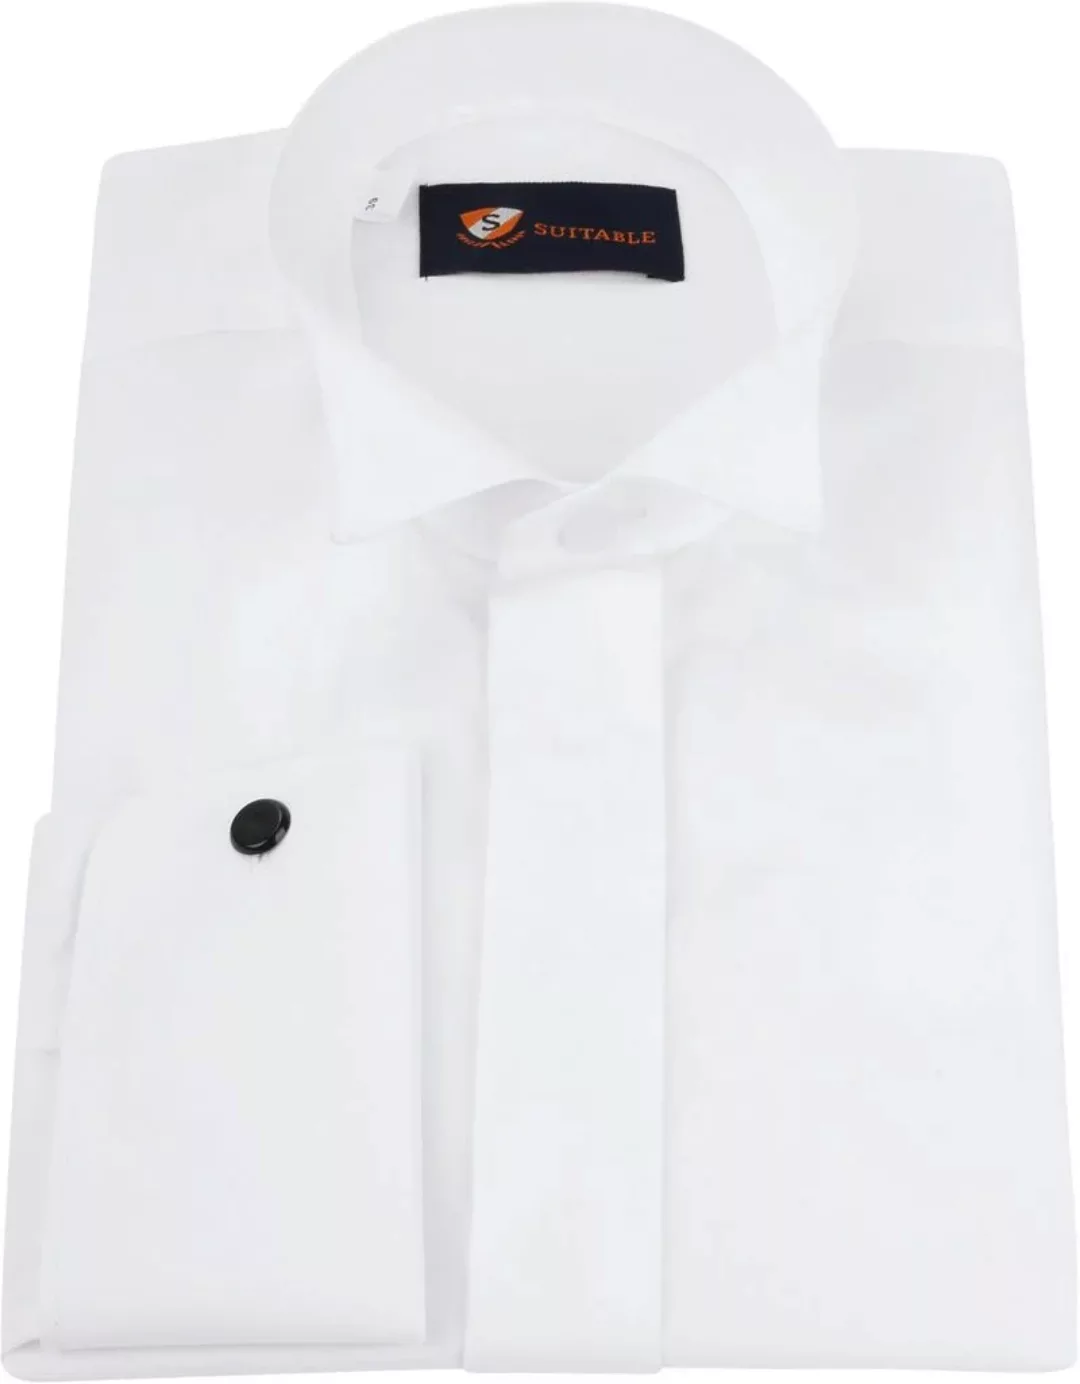 Suitable Hemd Weiß Plissiert - Größe 37 günstig online kaufen